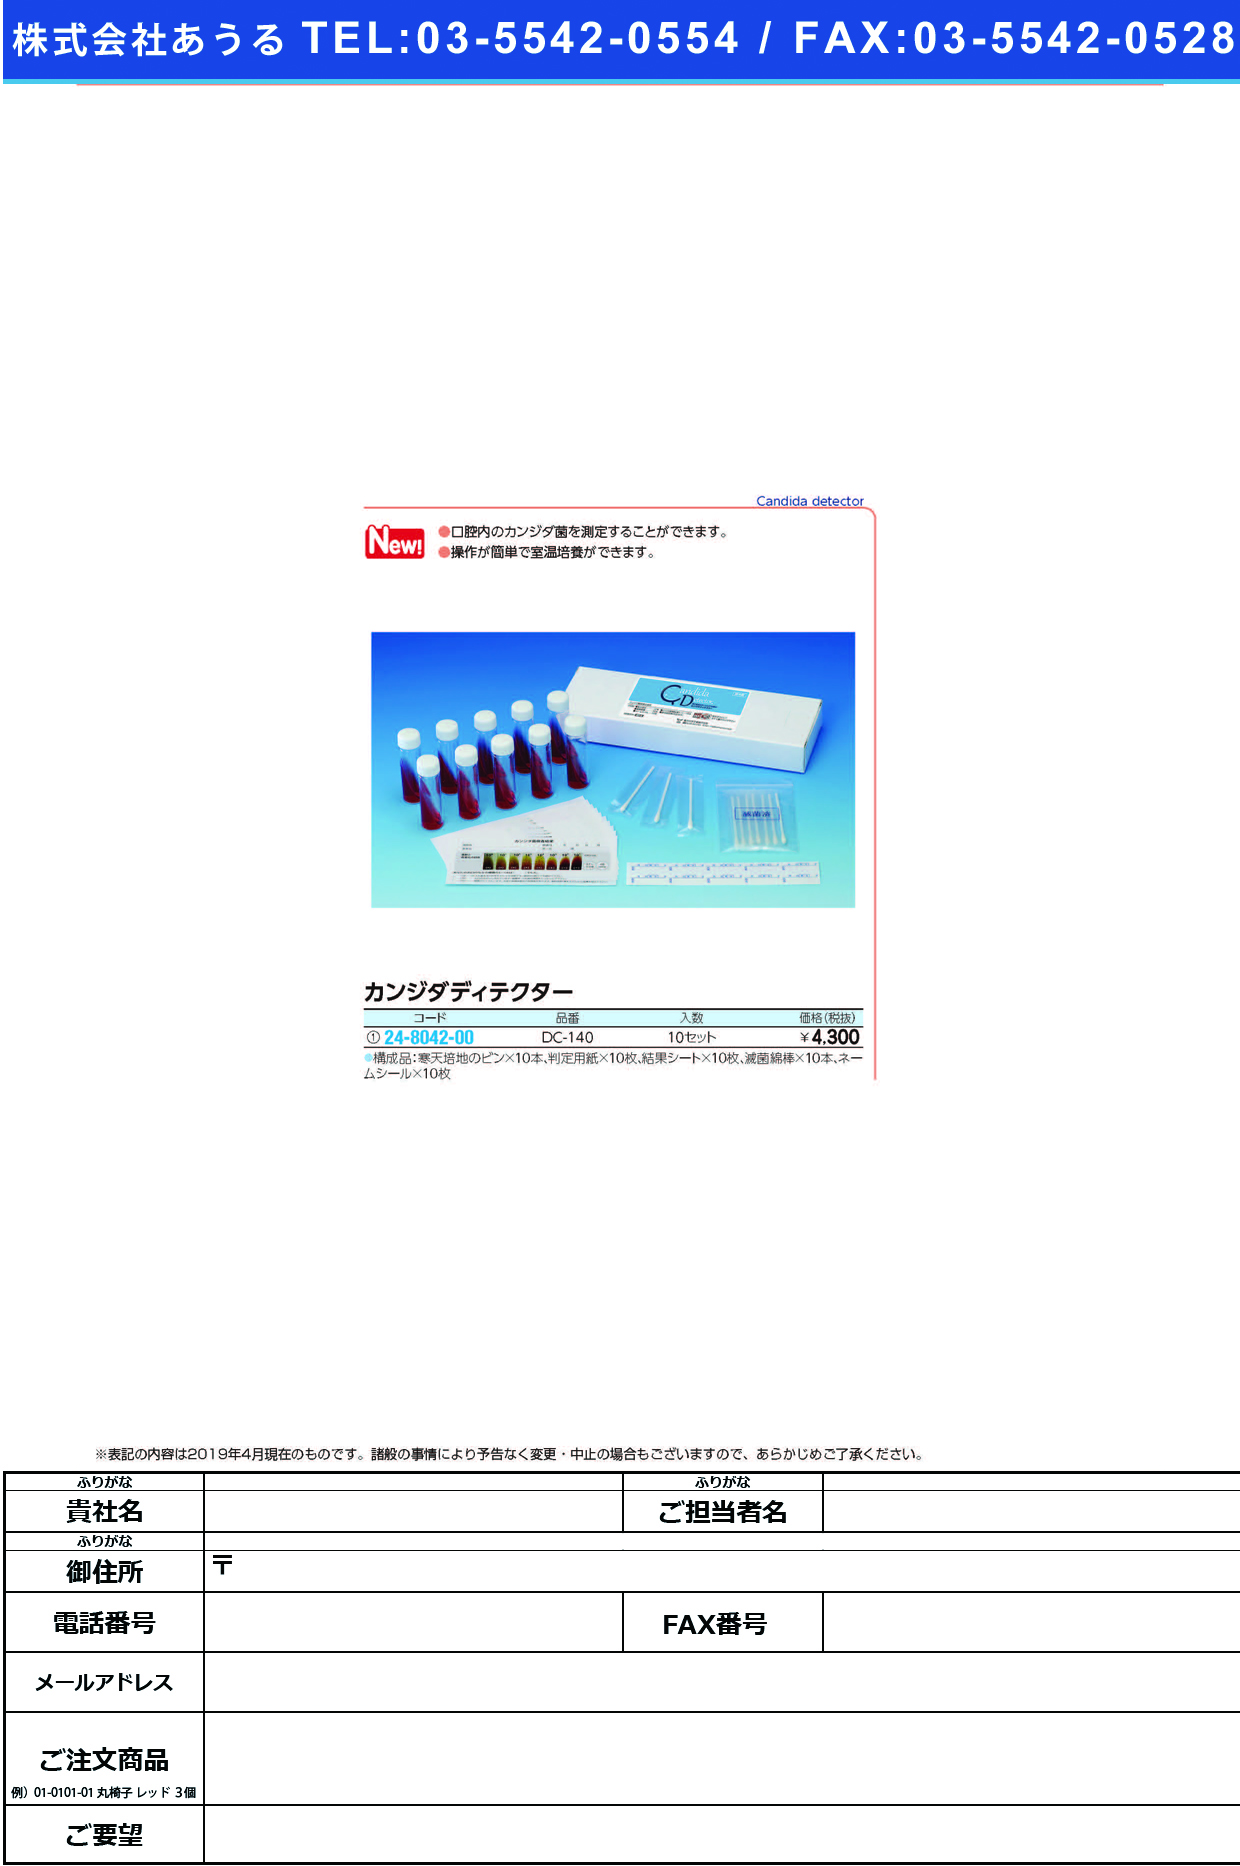 (24-8042-00)カンジダディテクターDC-140(10ｲﾘ)ﾖｳﾚｲｿﾞｳ ｶﾝｼﾞﾀﾃﾞｨﾃｸﾀｰ(デントケア)【1本単位】【2019年カタログ商品】